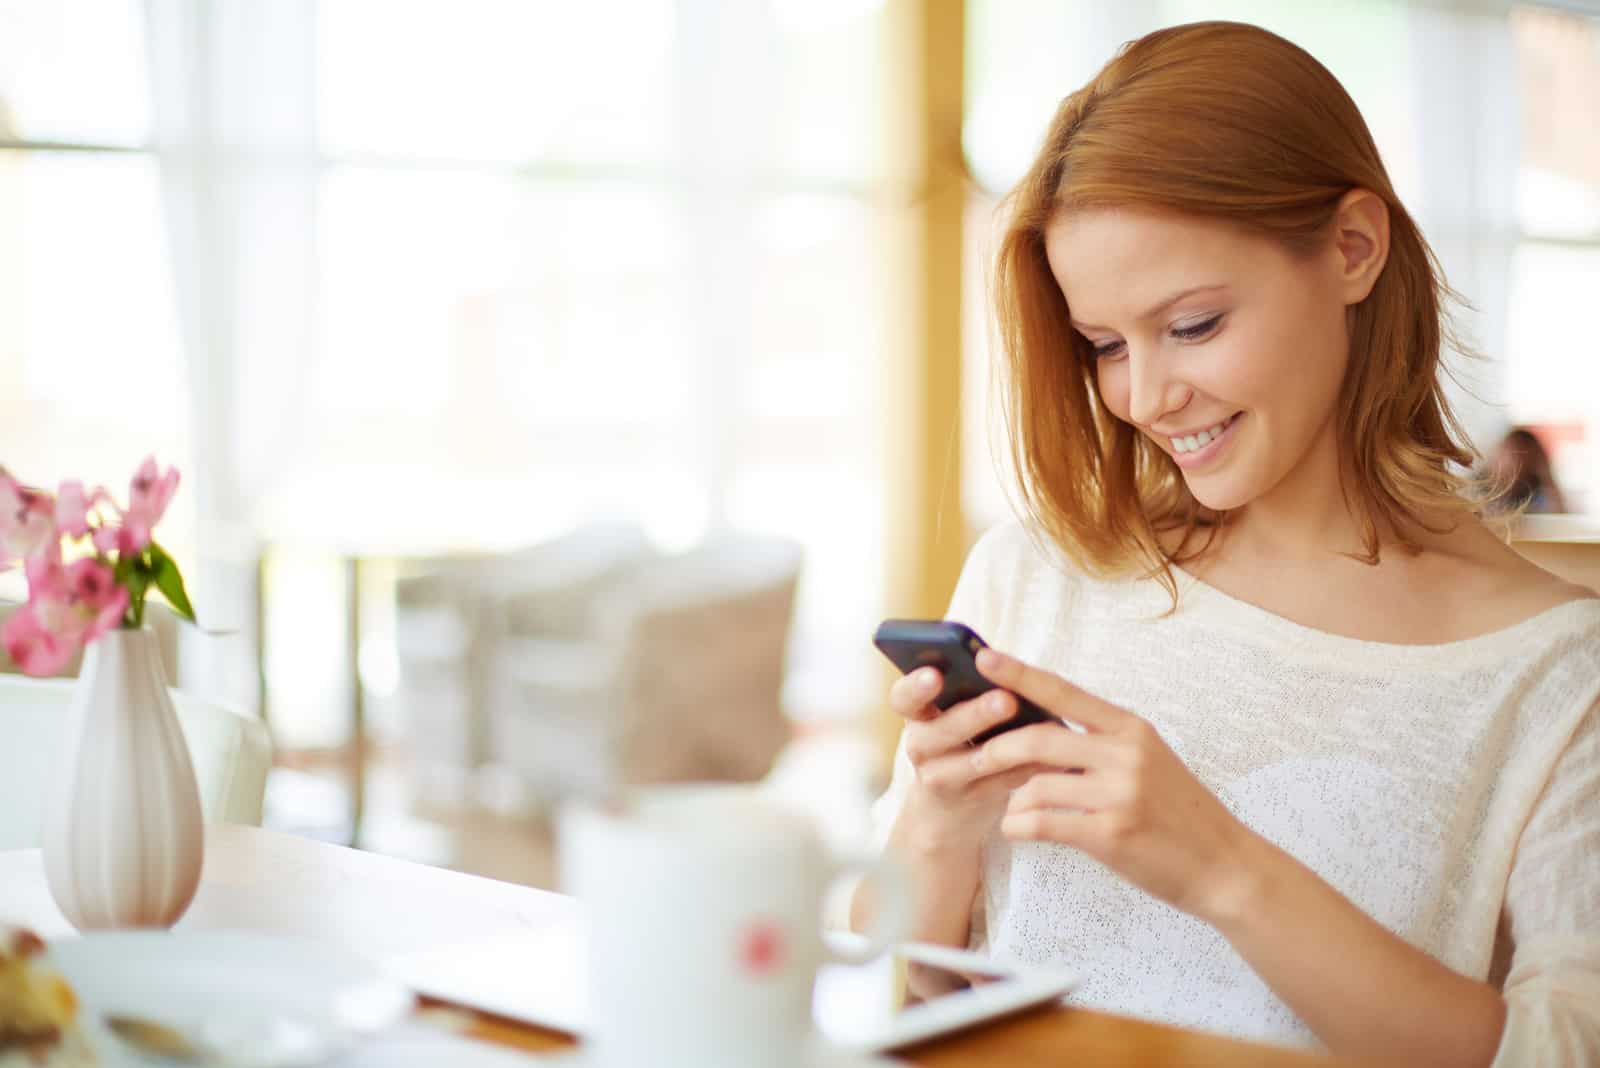 une femme rousse souriante est assise à une table et les touches du téléphone